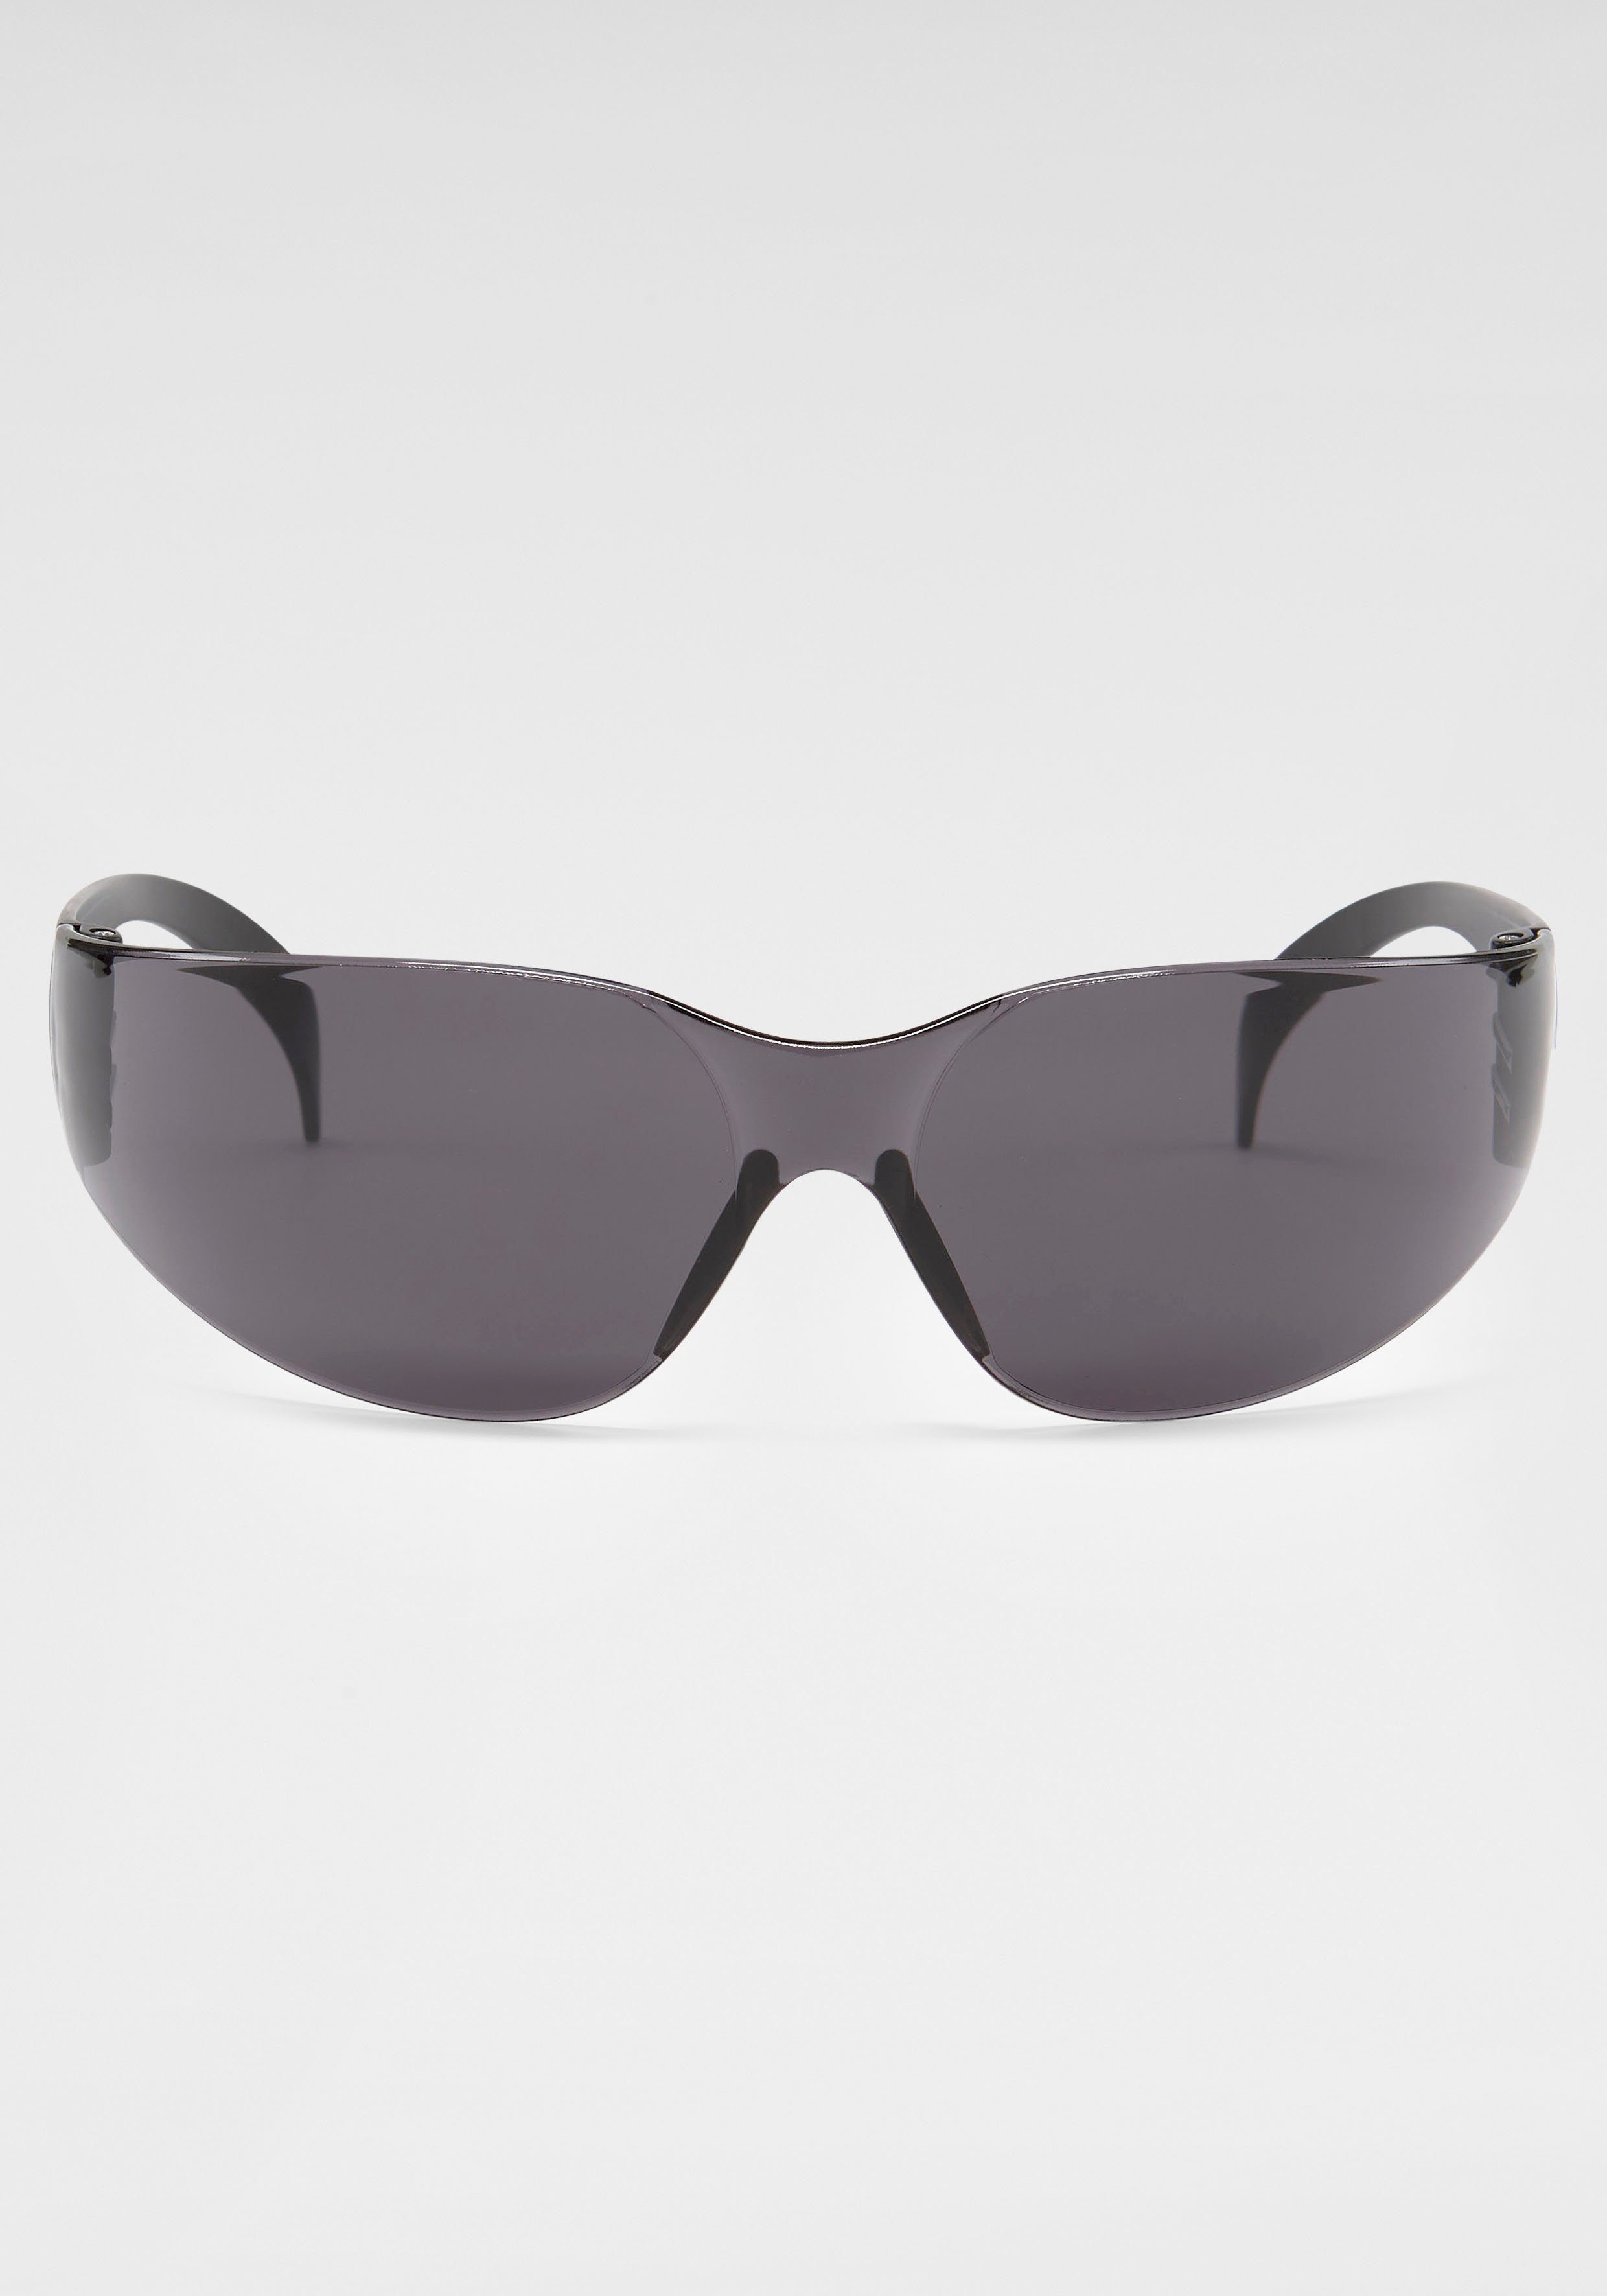 BACK IN BLACK Eyewear Sonnenbrille Randlos schwarz | Sonnenbrillen